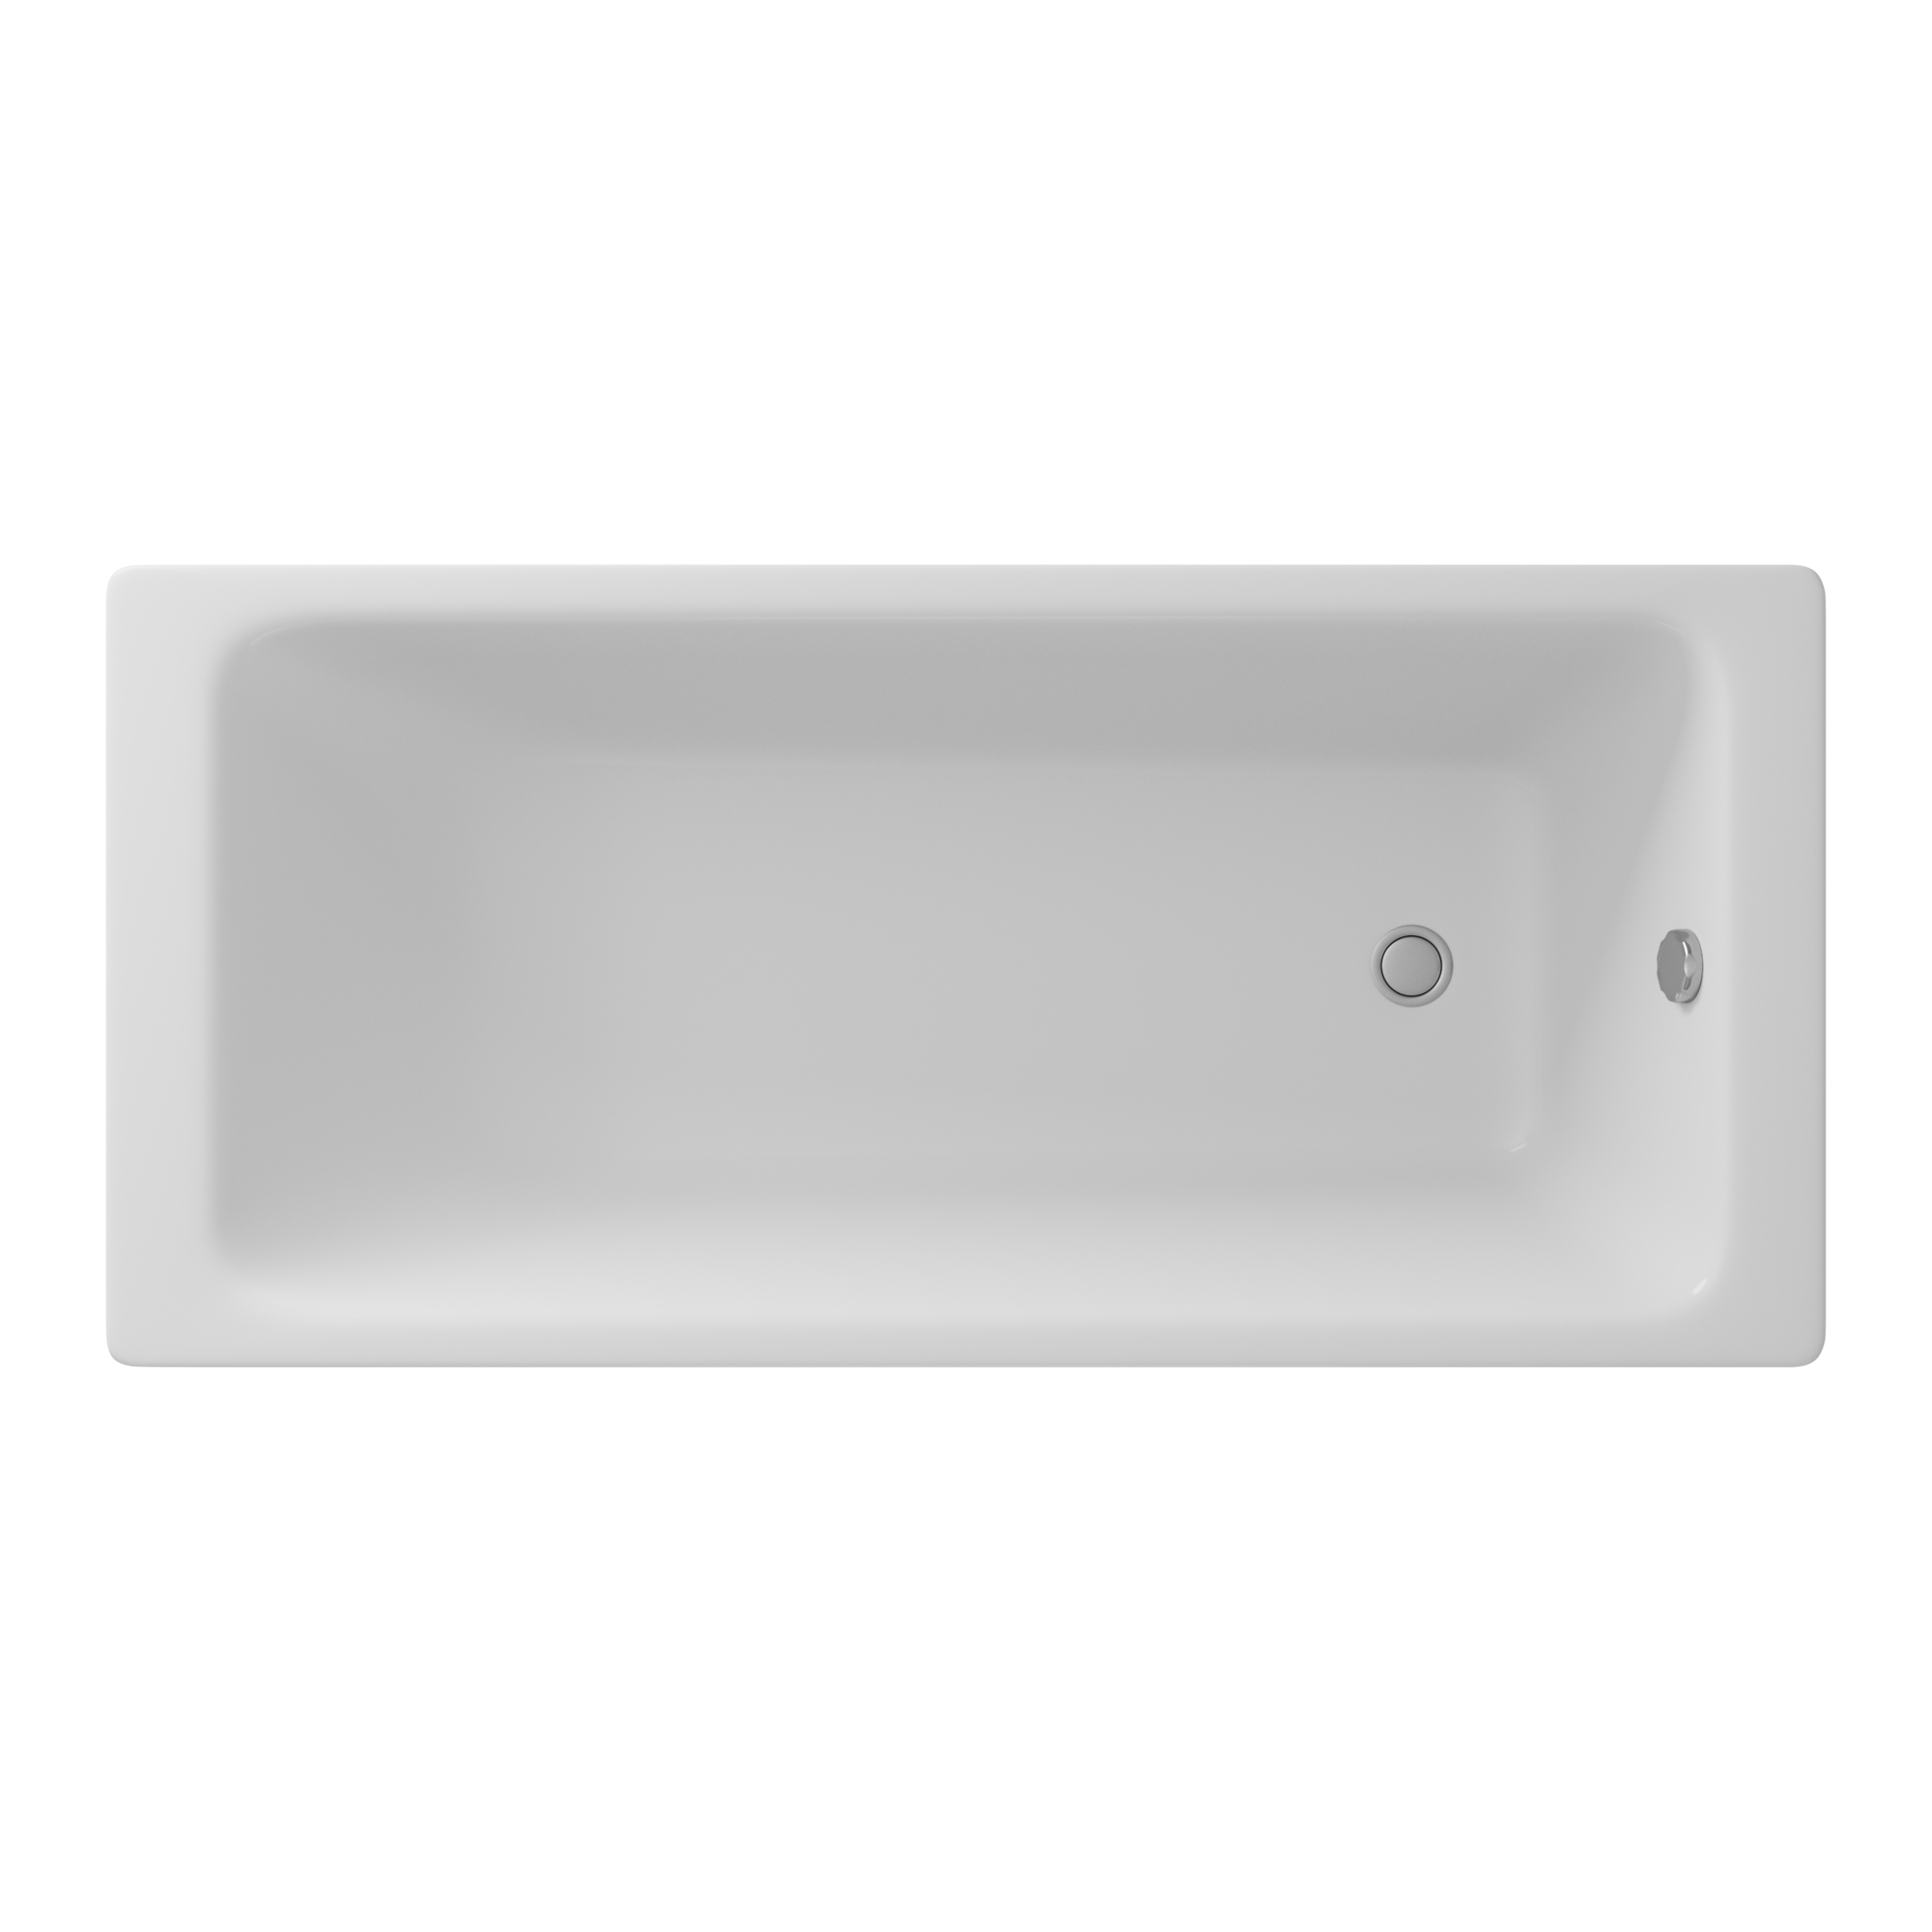 Чугунная ванна Delice Parallel 150x70 DLR220503, цвет белый - фото 1